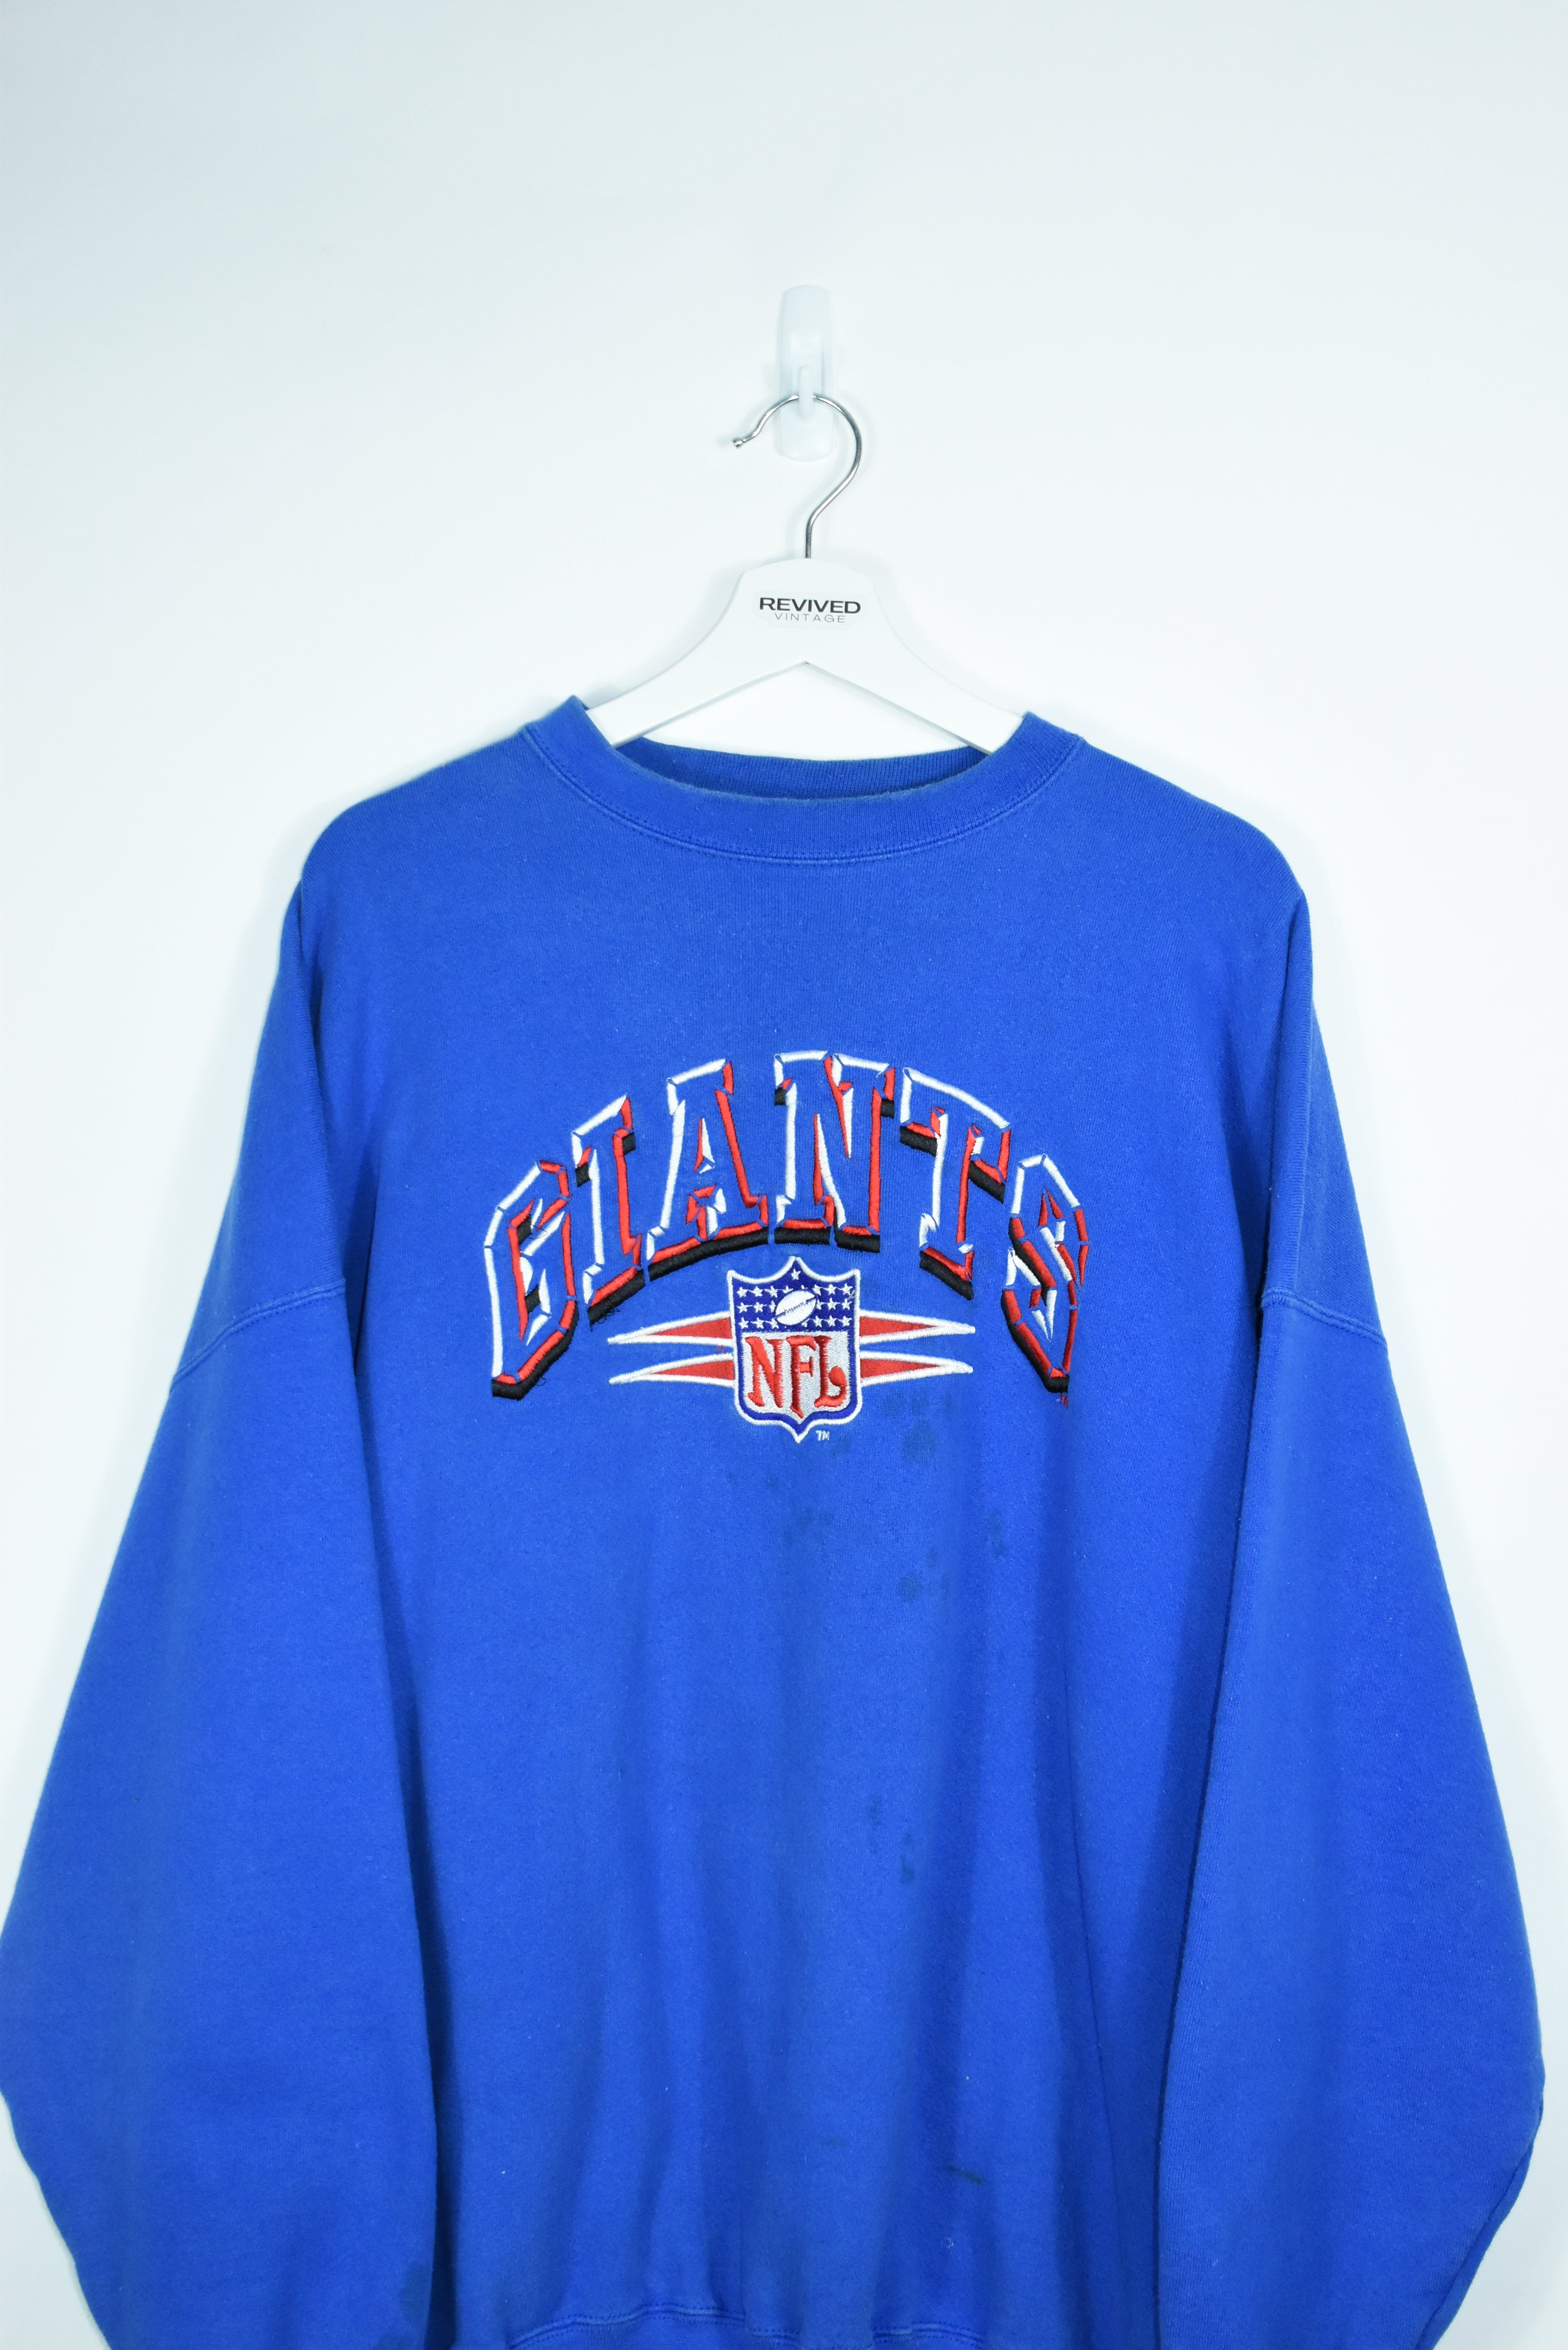 Vintage NFL Giants Embroidery Sweatshirt XXL